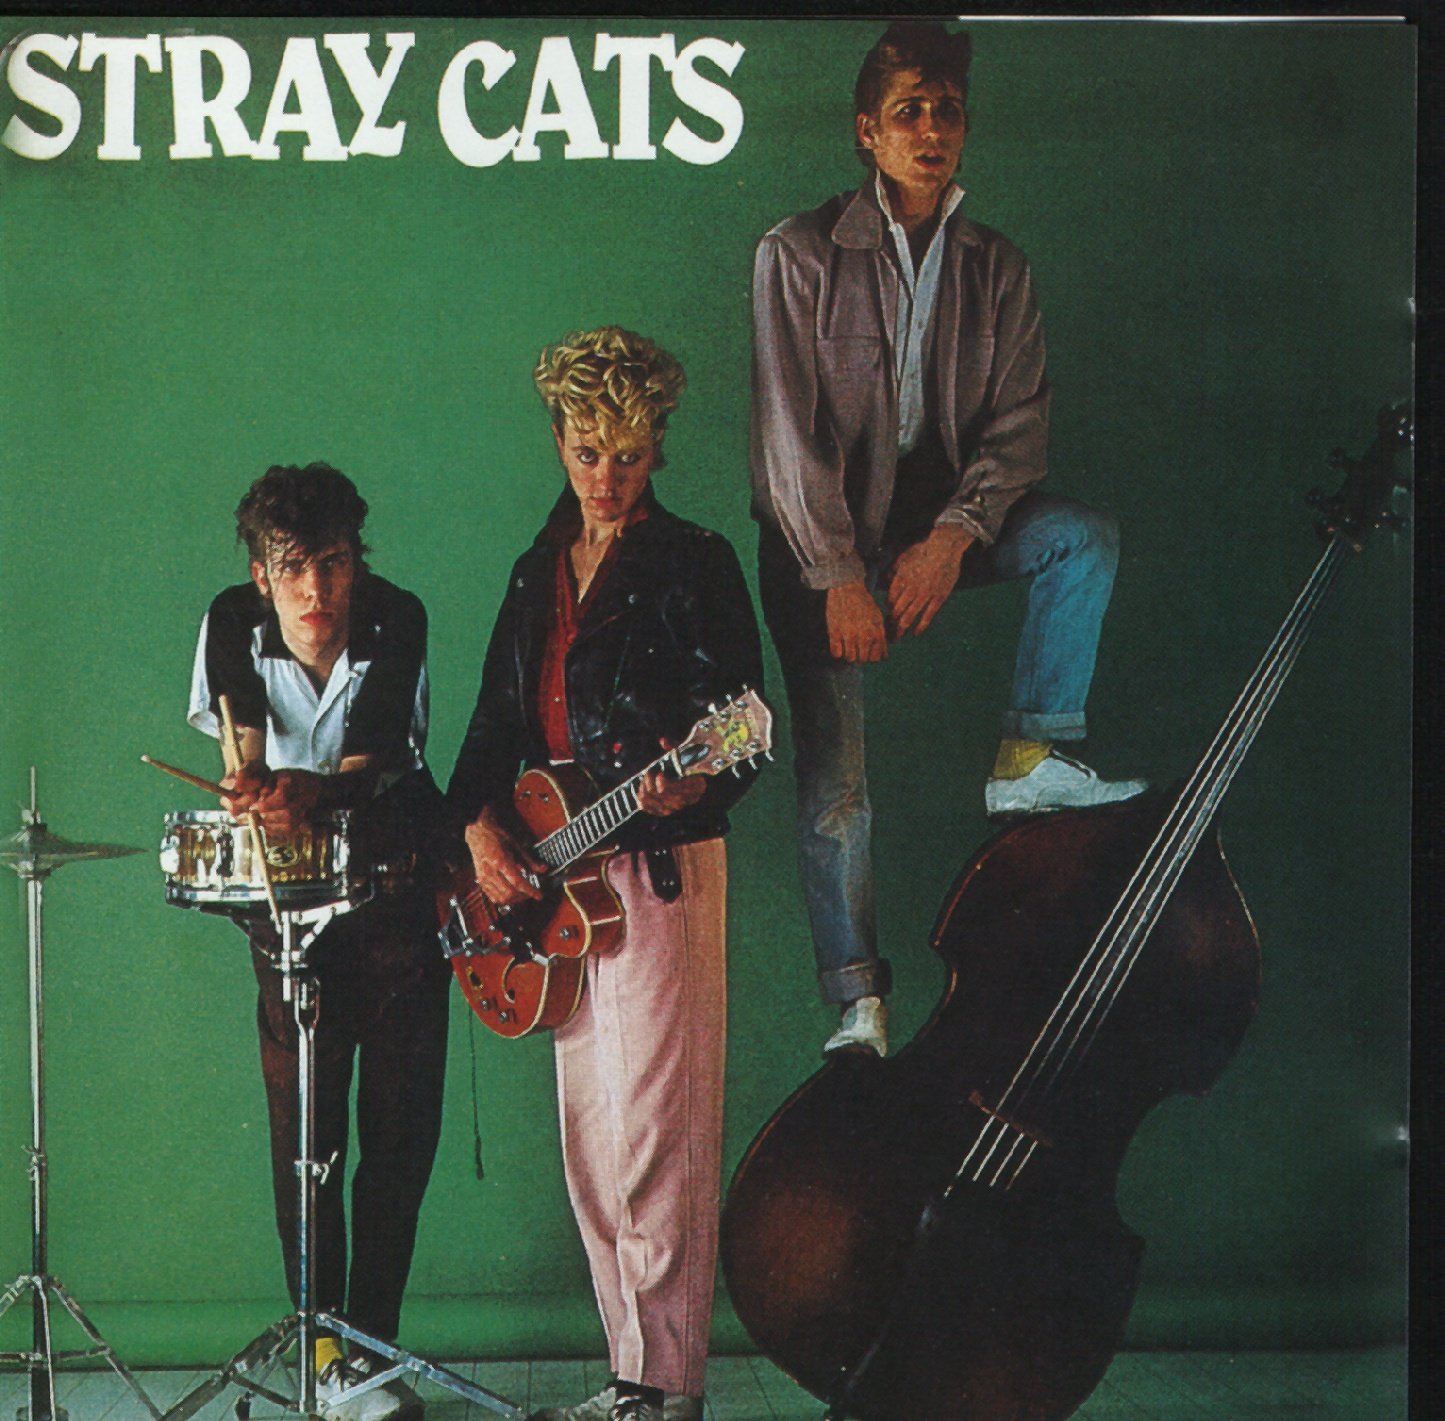 Stray cats ubangi stomp. Stray Cats 1981. Stray Cats альбом 1981. Stray Cats дискография. Группа Stray Cats альбомы.